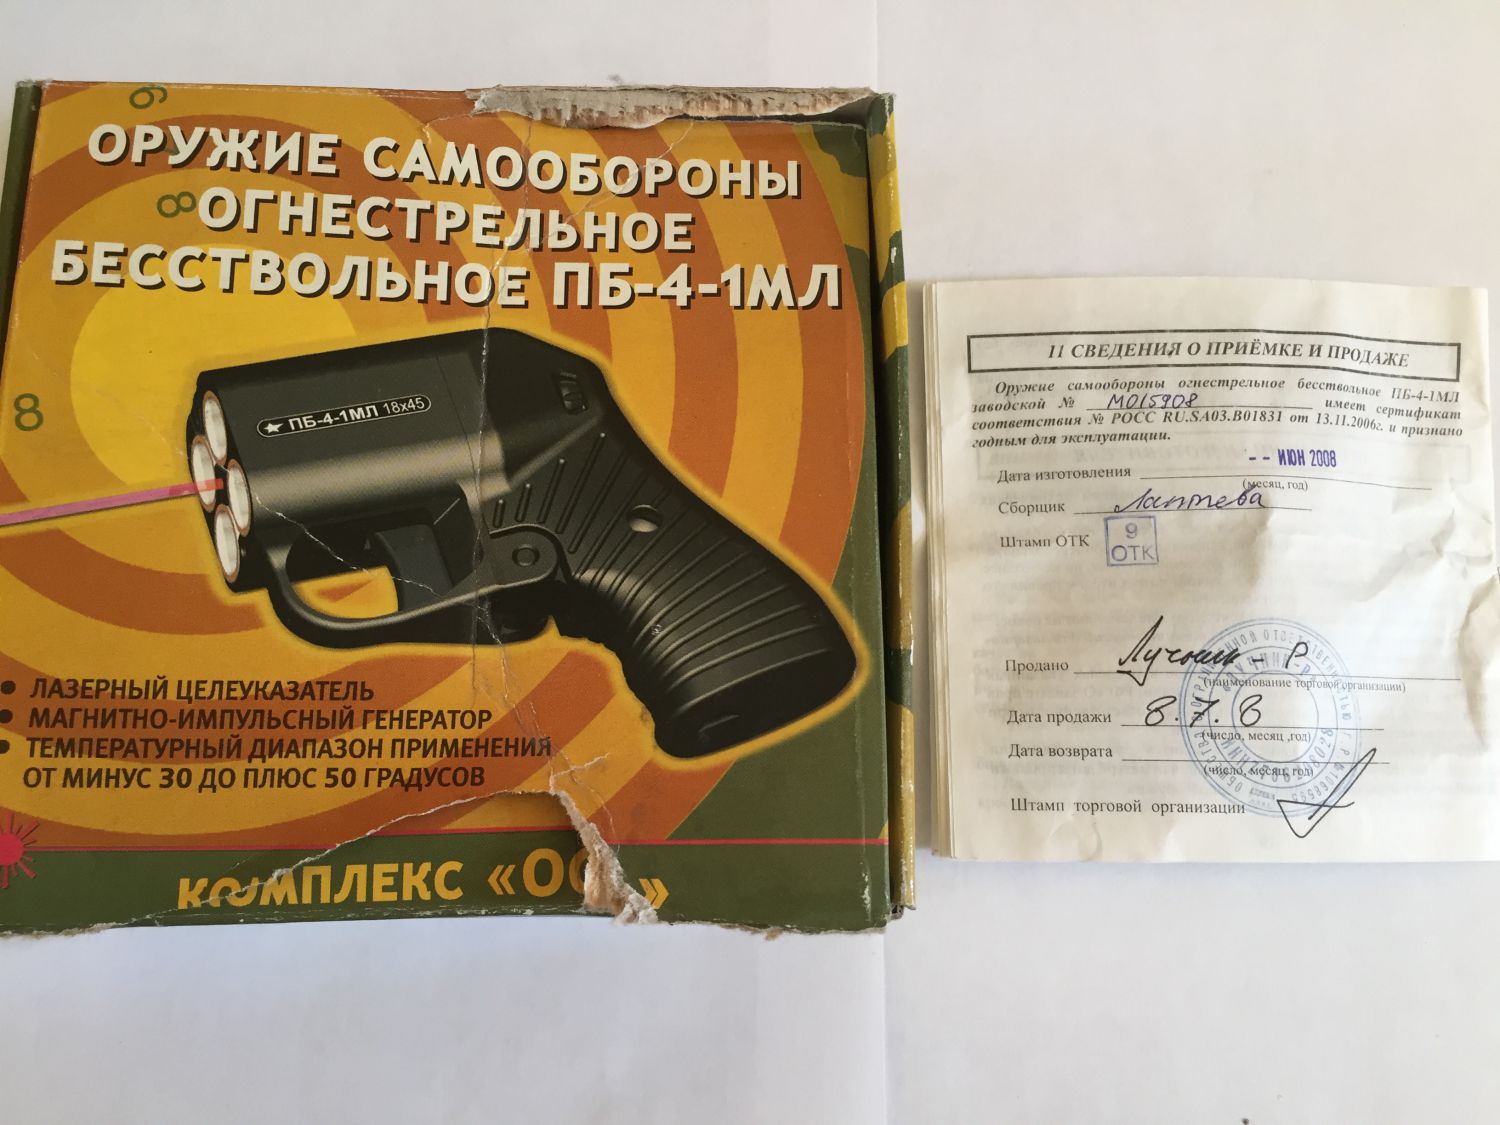 Оружие для самообороны без разрешения в россии